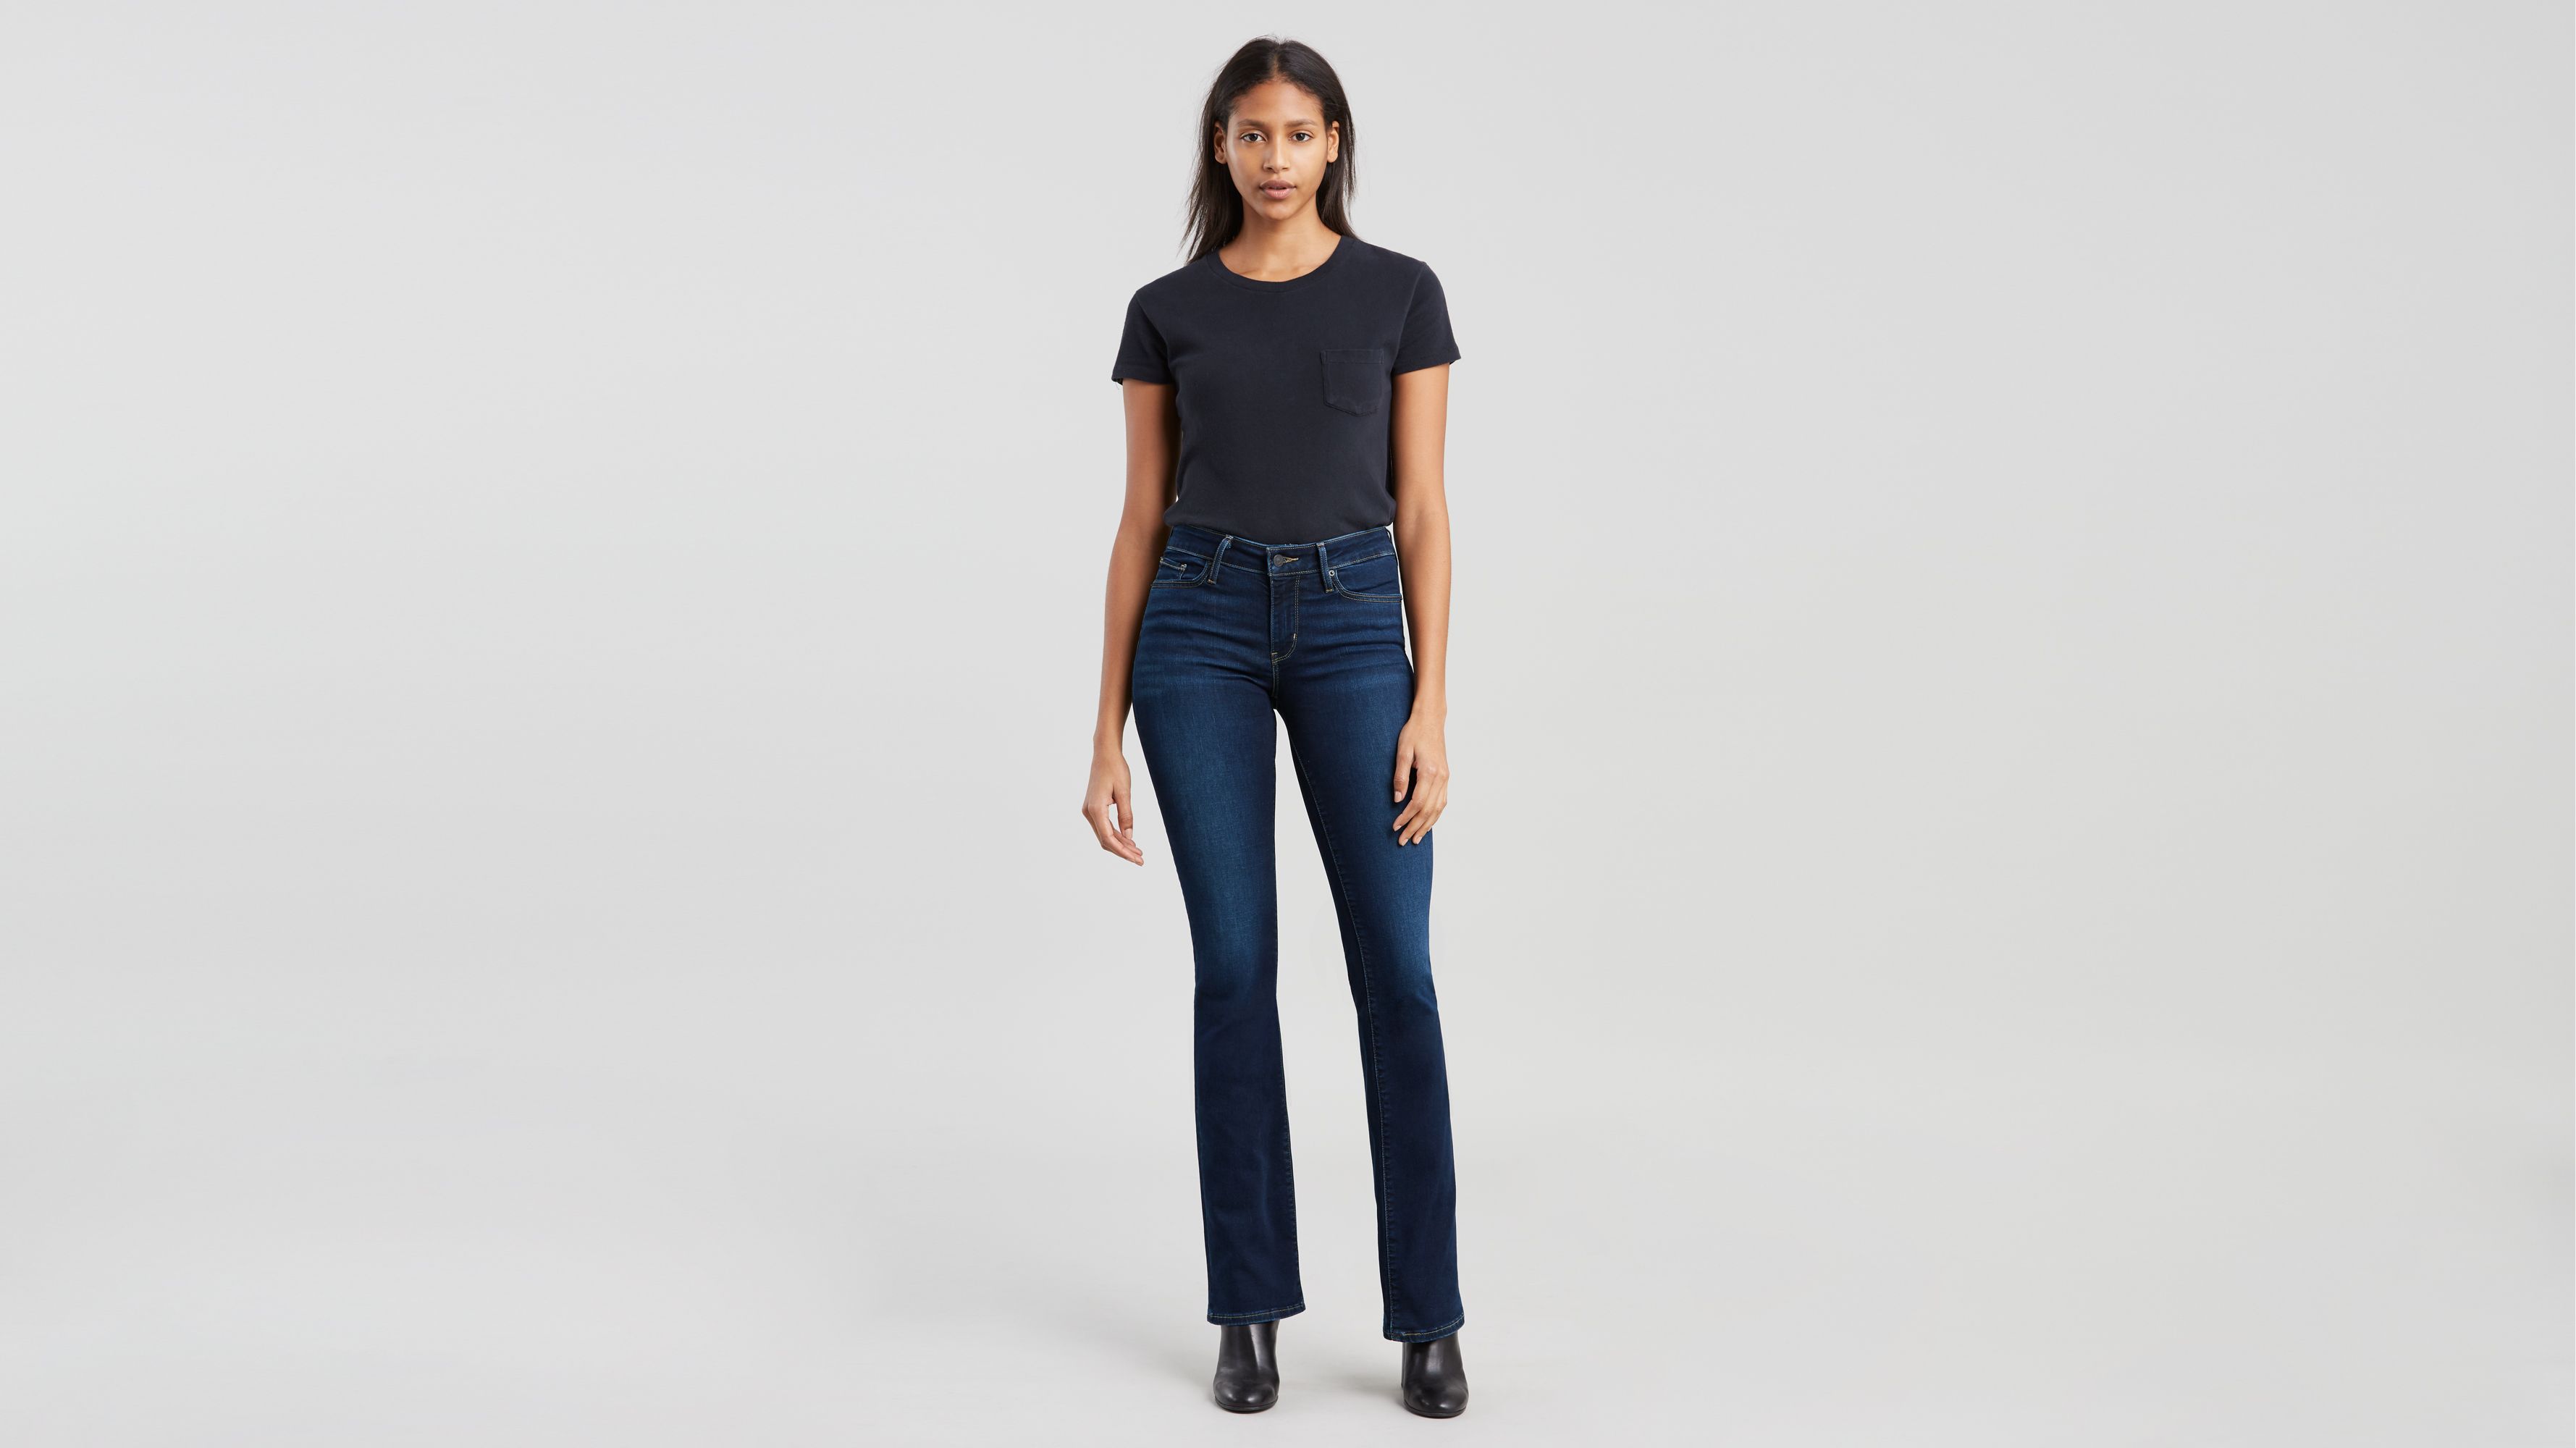 Buy > 715 bootcut women's jeans > in stock